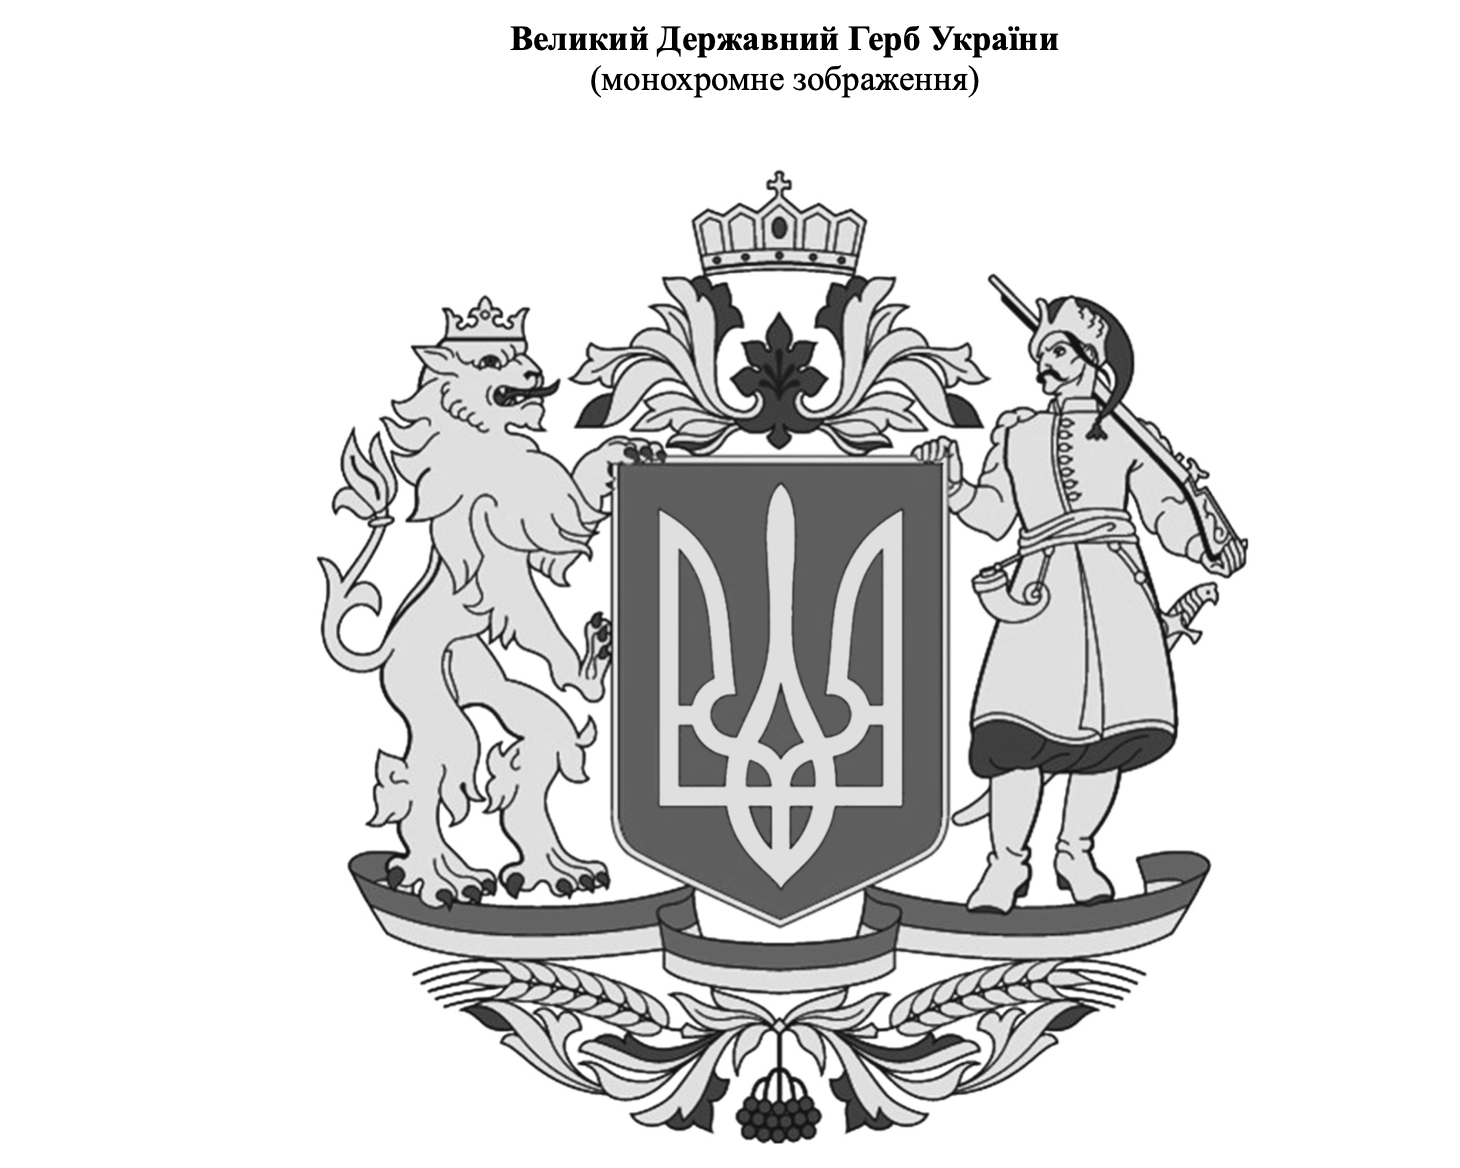 Зеленский предлагает сделать Большим гербом Украины рисунок, утвержденный при Юлии Тимошенко. Фото